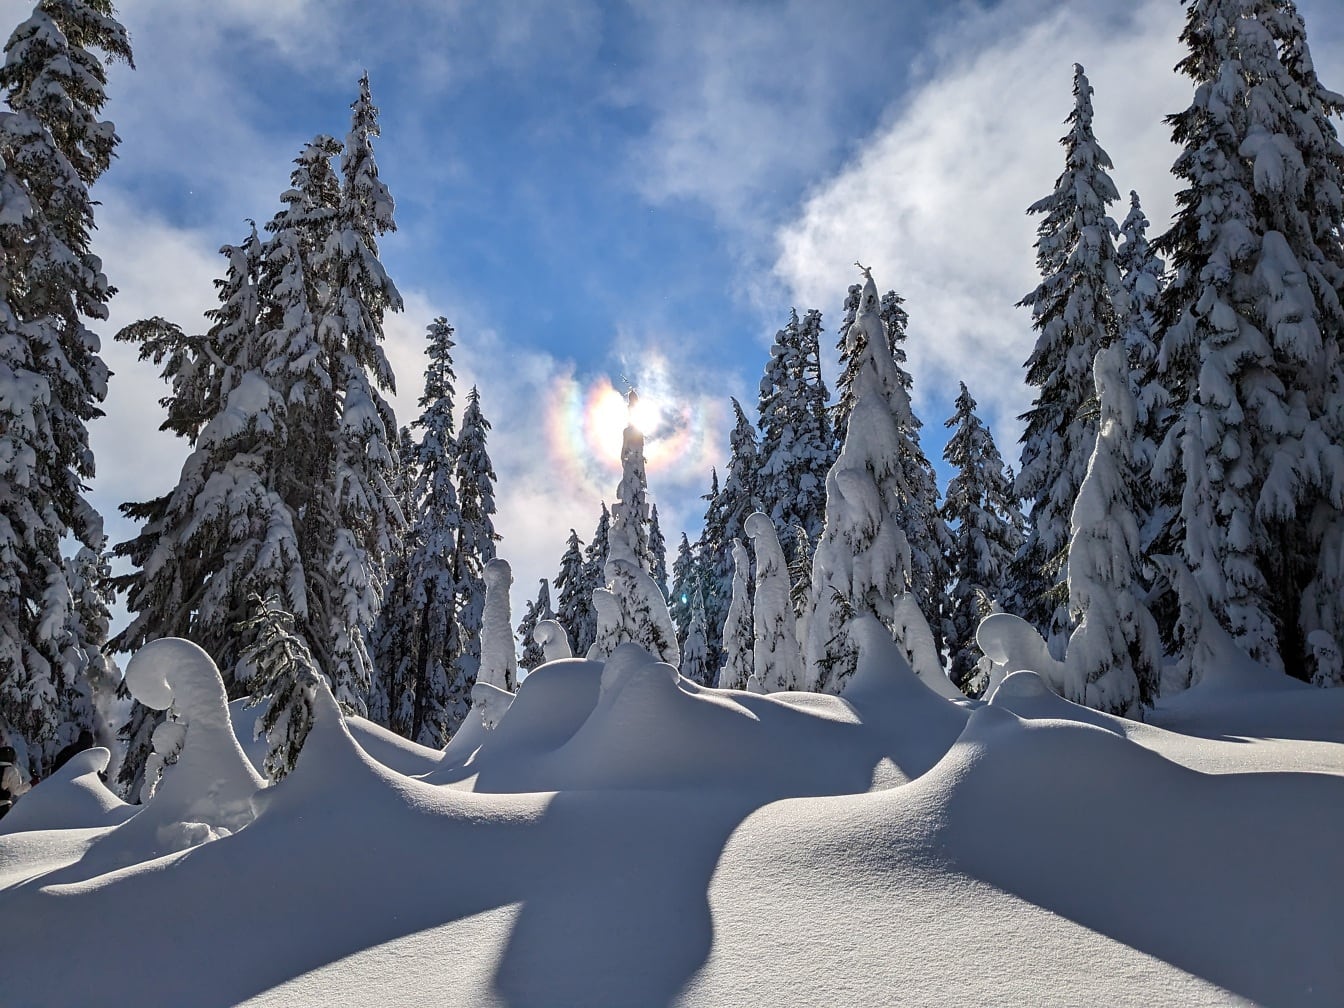 Pini acoperiți de zăpadă în pădure într-o zi însorită